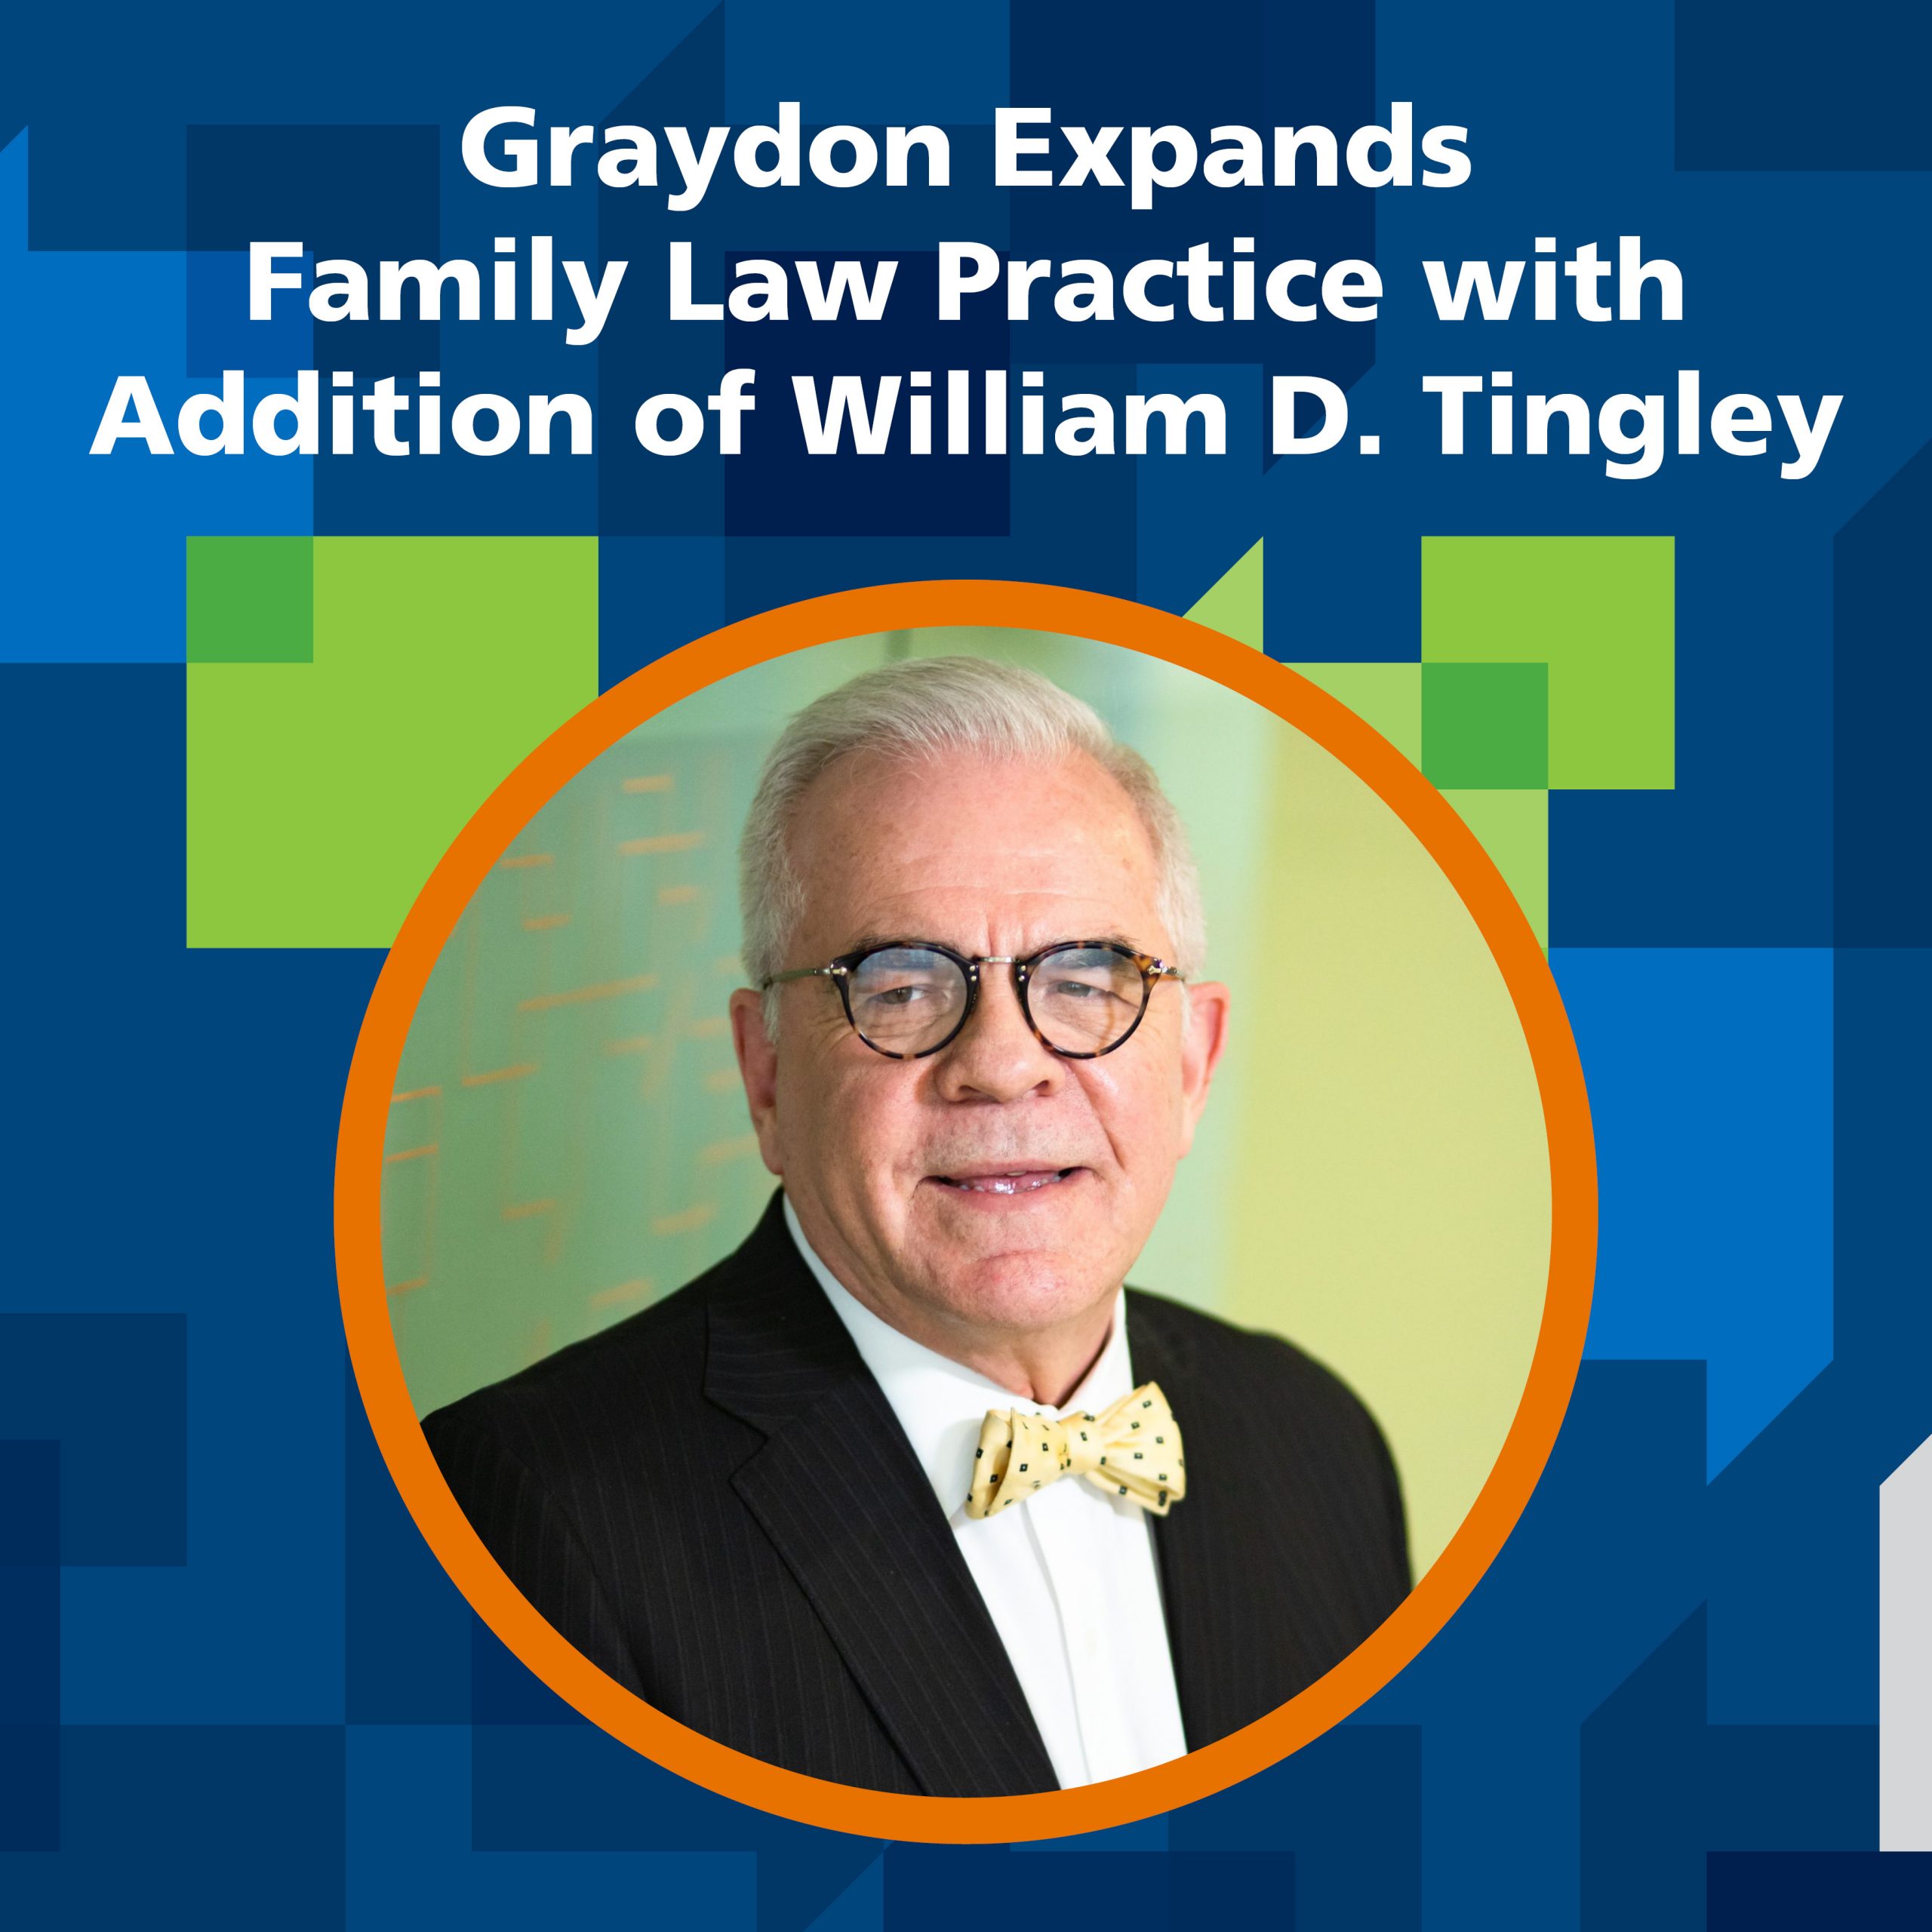 William D. Tingley